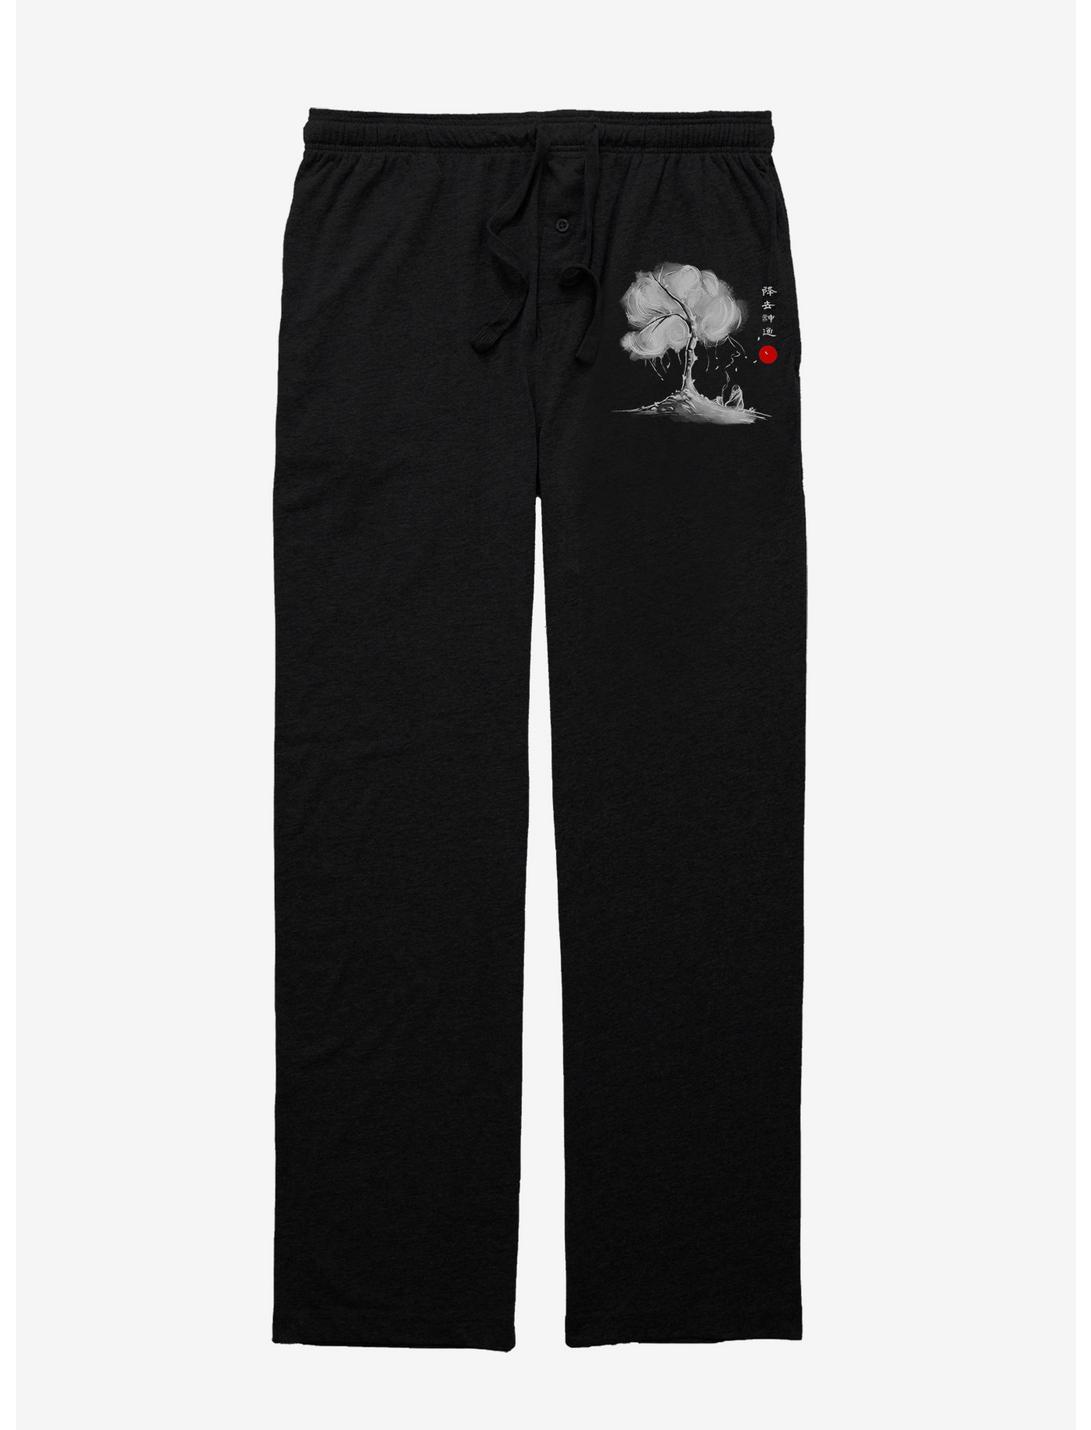 Avatar Uncle Iroh Pajama Pants, BLACK, hi-res